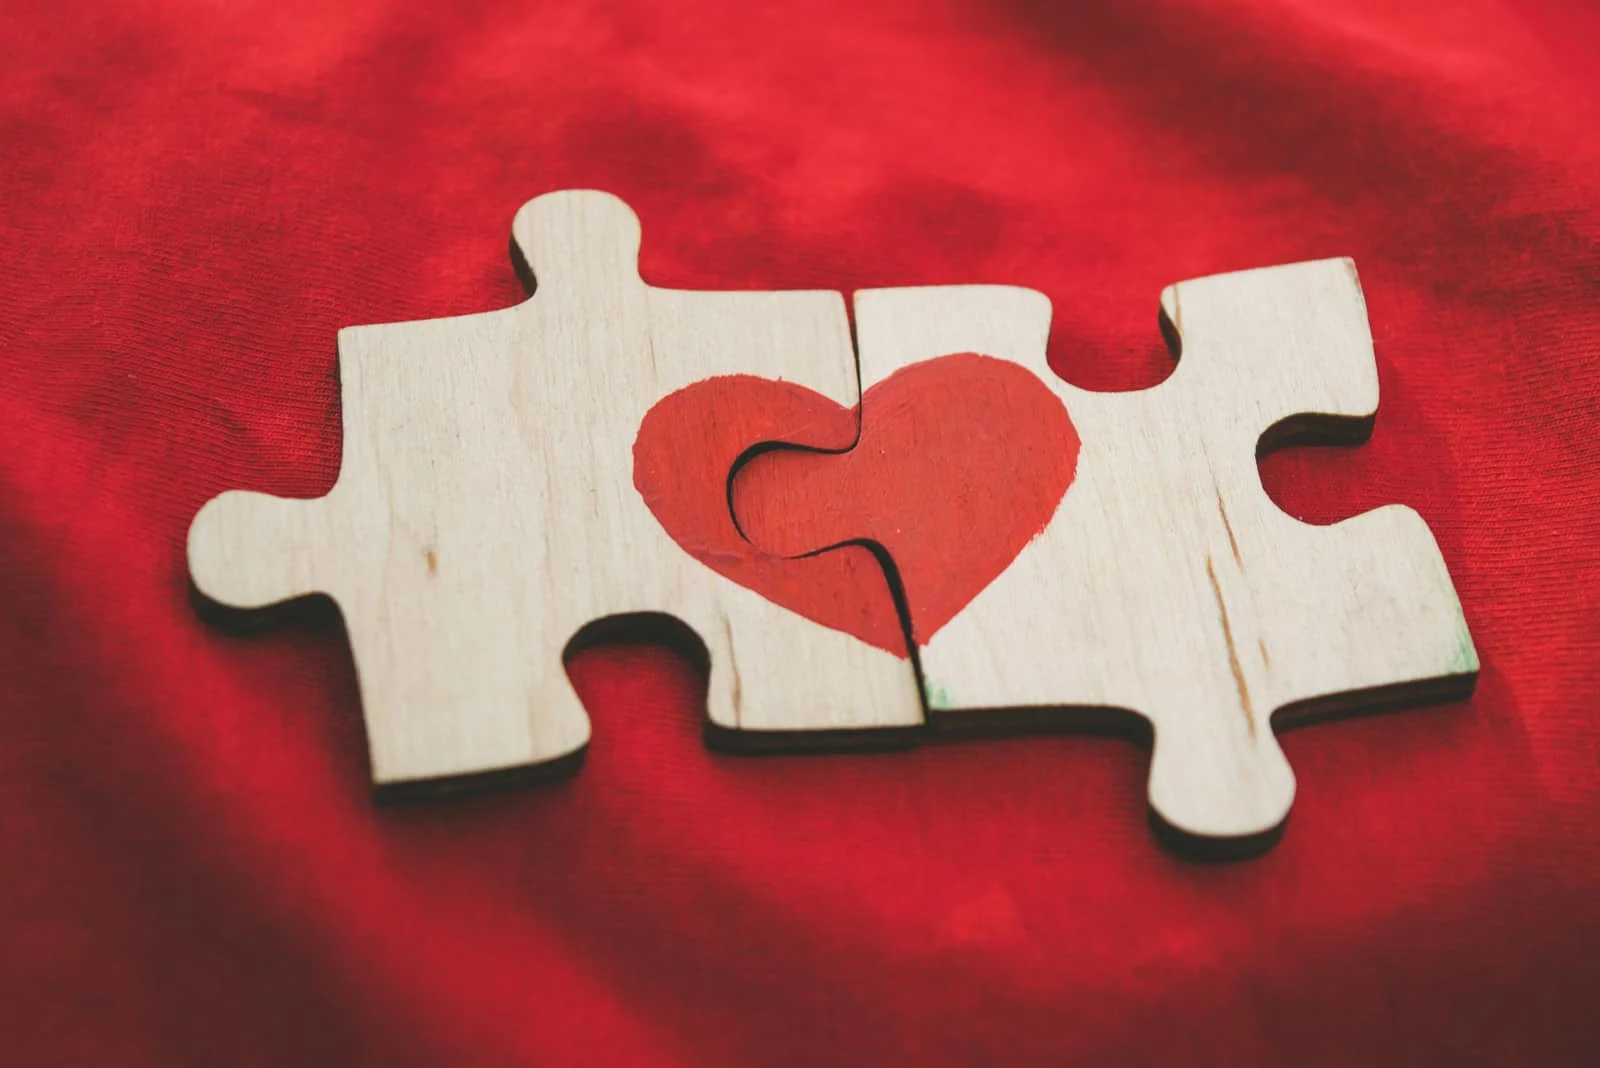 Auf die Teile des Holzpuzzles ist ein rotes Herz gezeichnet